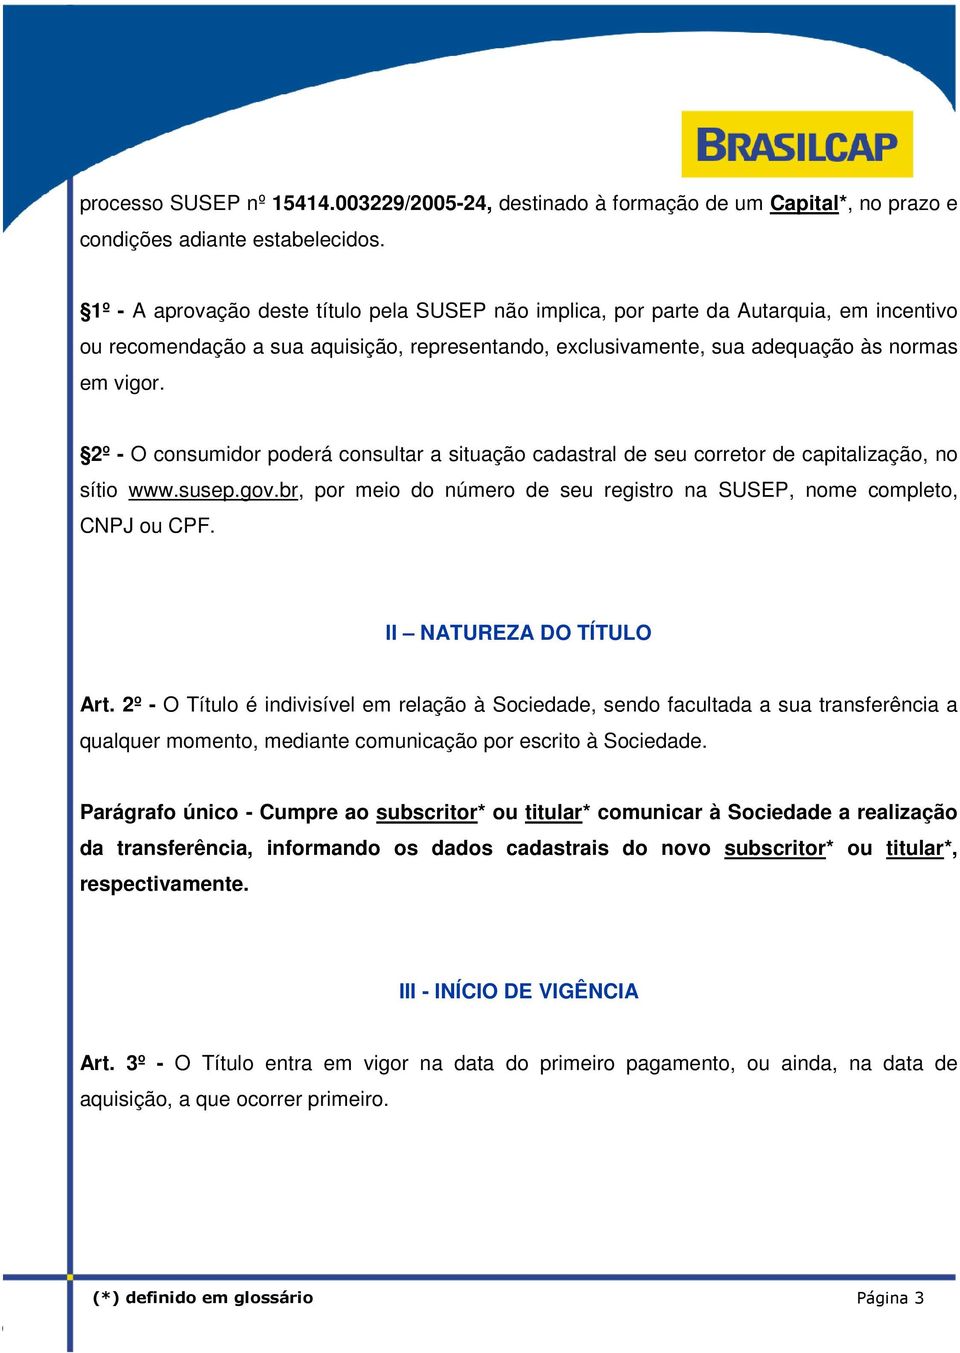 2º - O consumidor poderá consultar a situação cadastral de seu corretor de capitalização, no sítio www.susep.gov.br, por meio do número de seu registro na SUSEP, nome completo, CNPJ ou CPF.